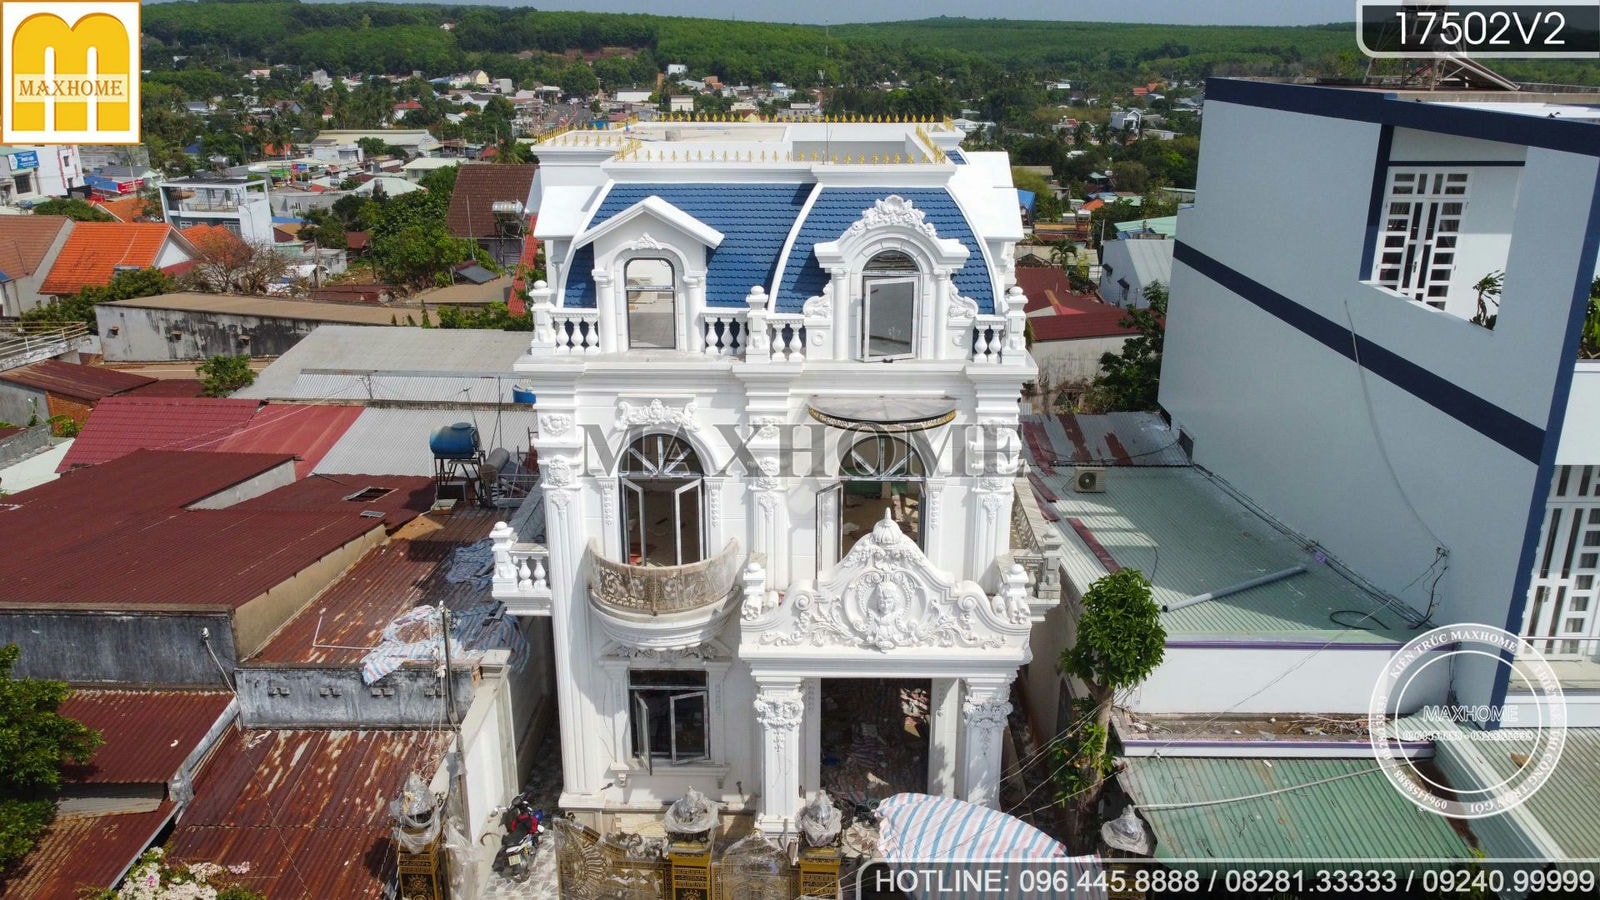 Ghé thăm tiến độ công trình mái Mansard đồ sộ ở Bình Phước | MH00892